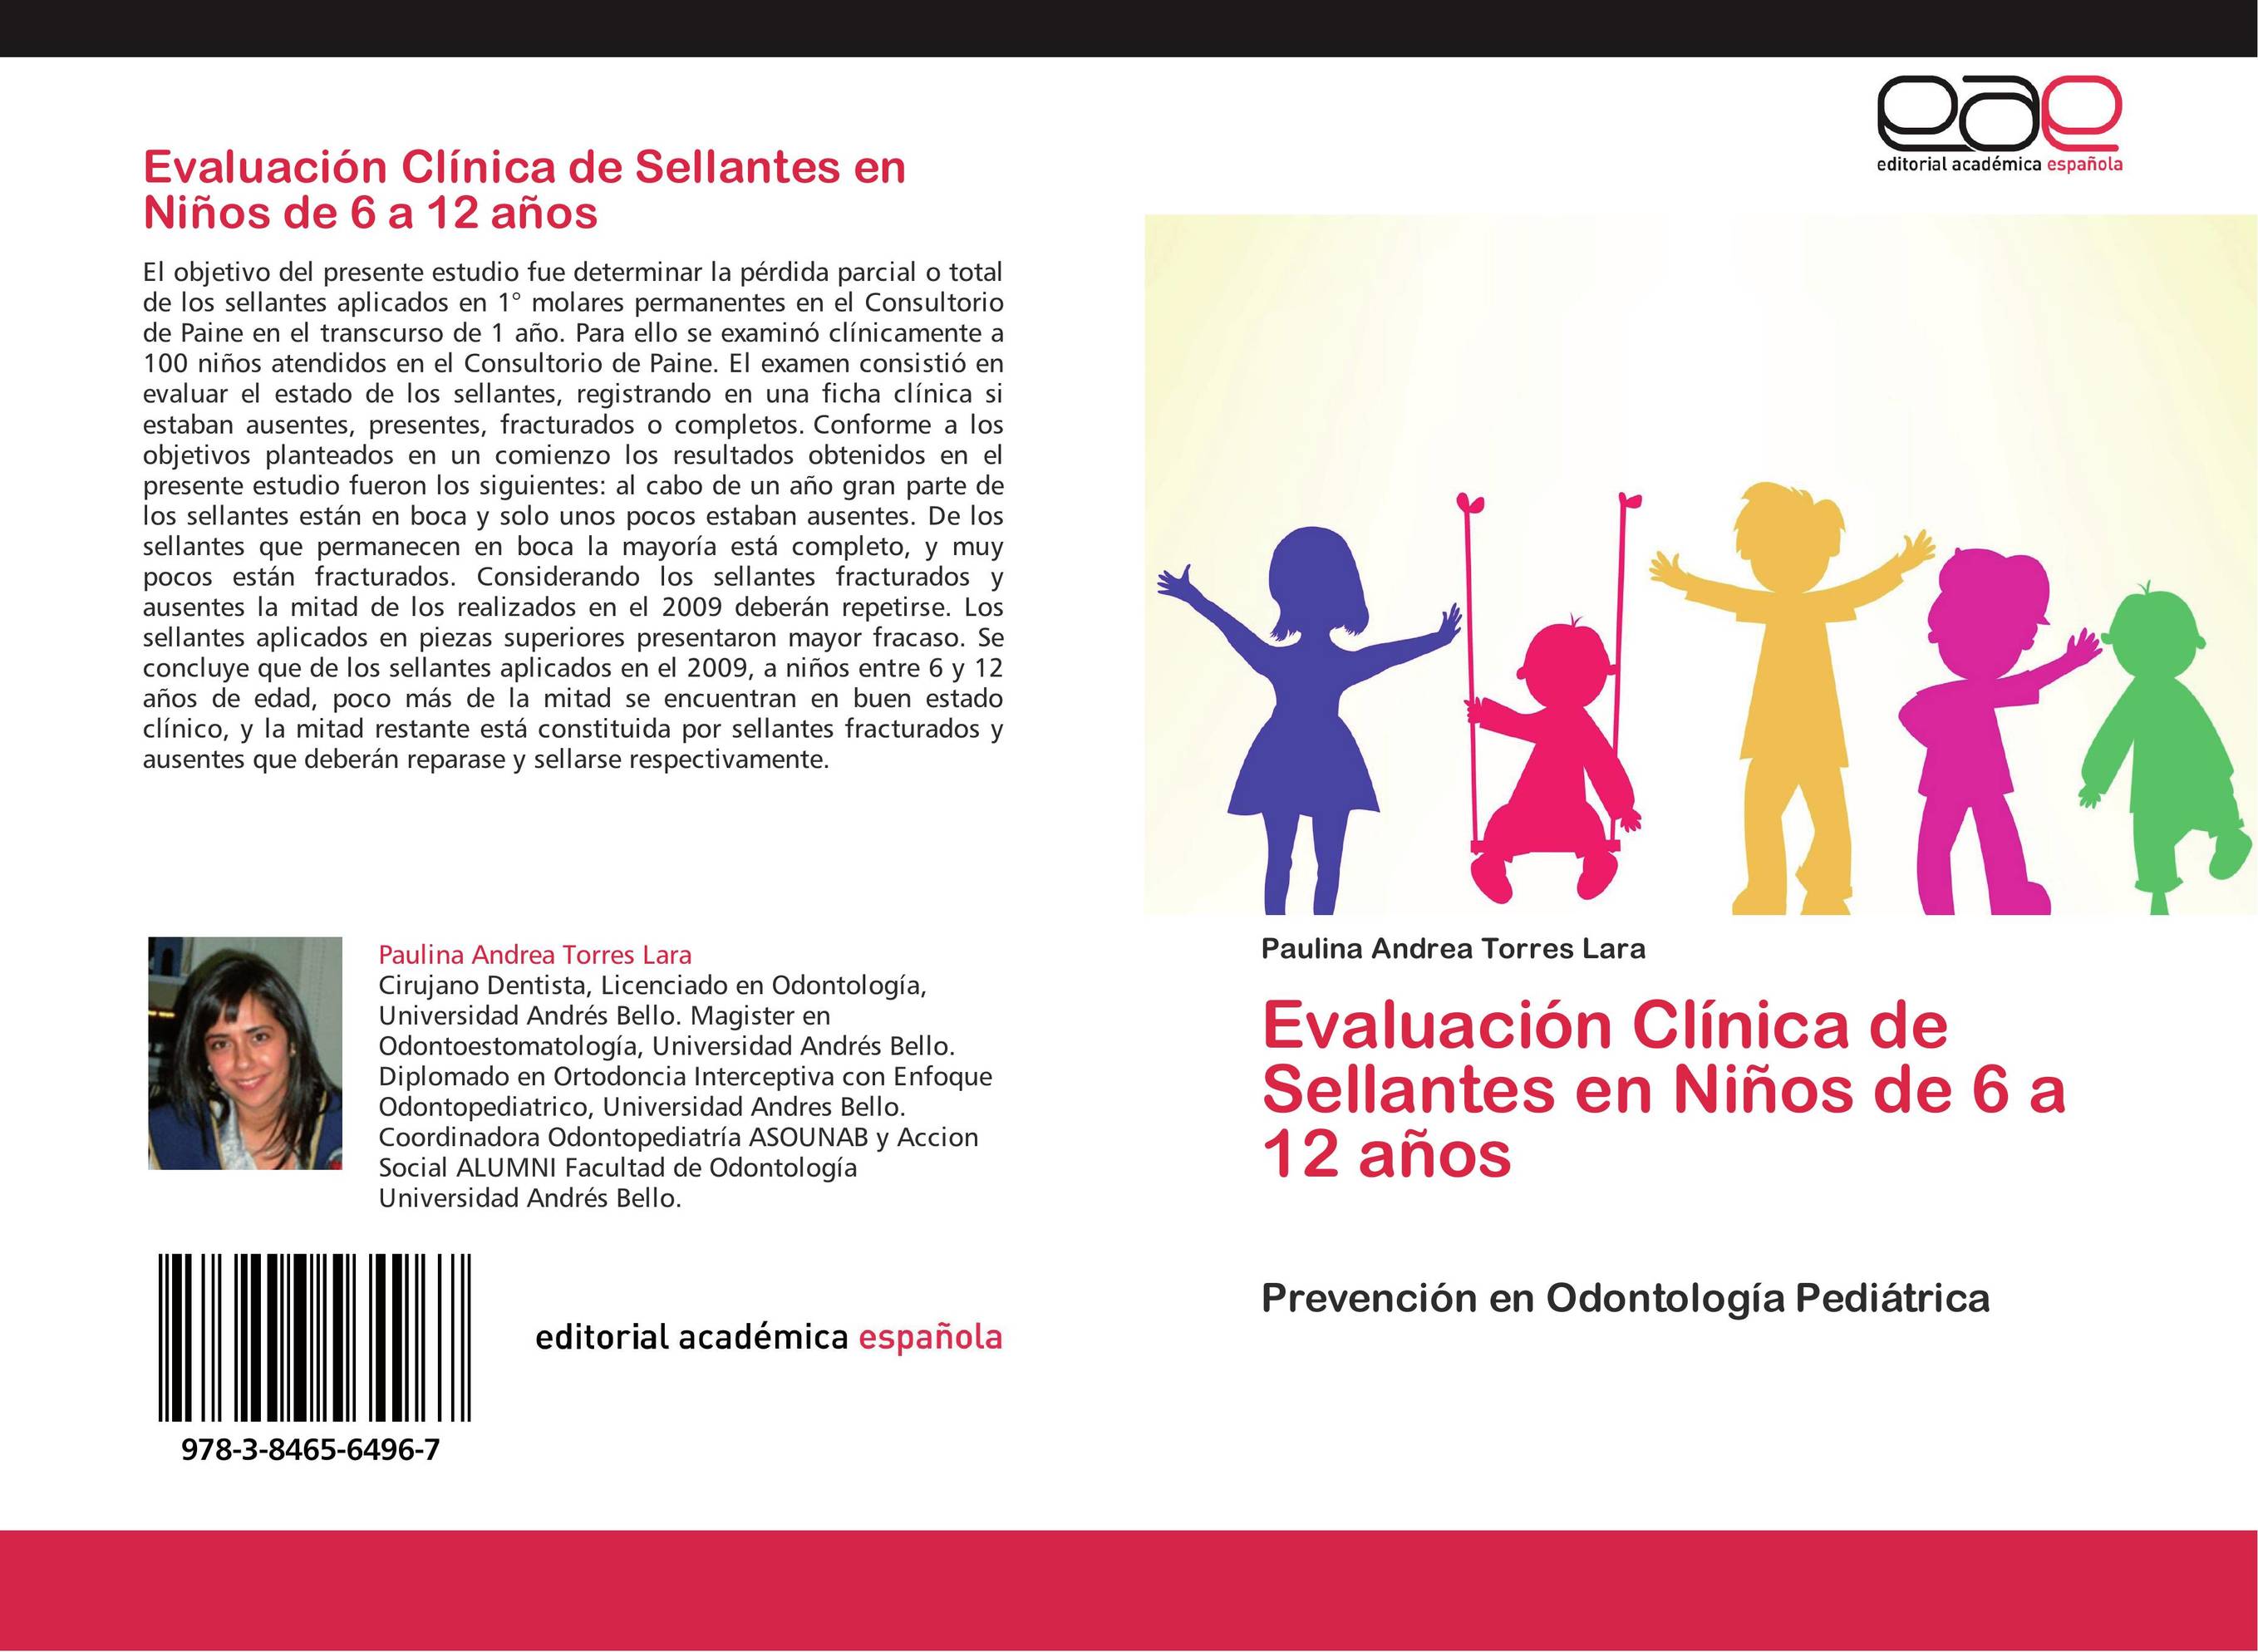 Evaluación Clínica de Sellantes en Niños de 6 a 12 años